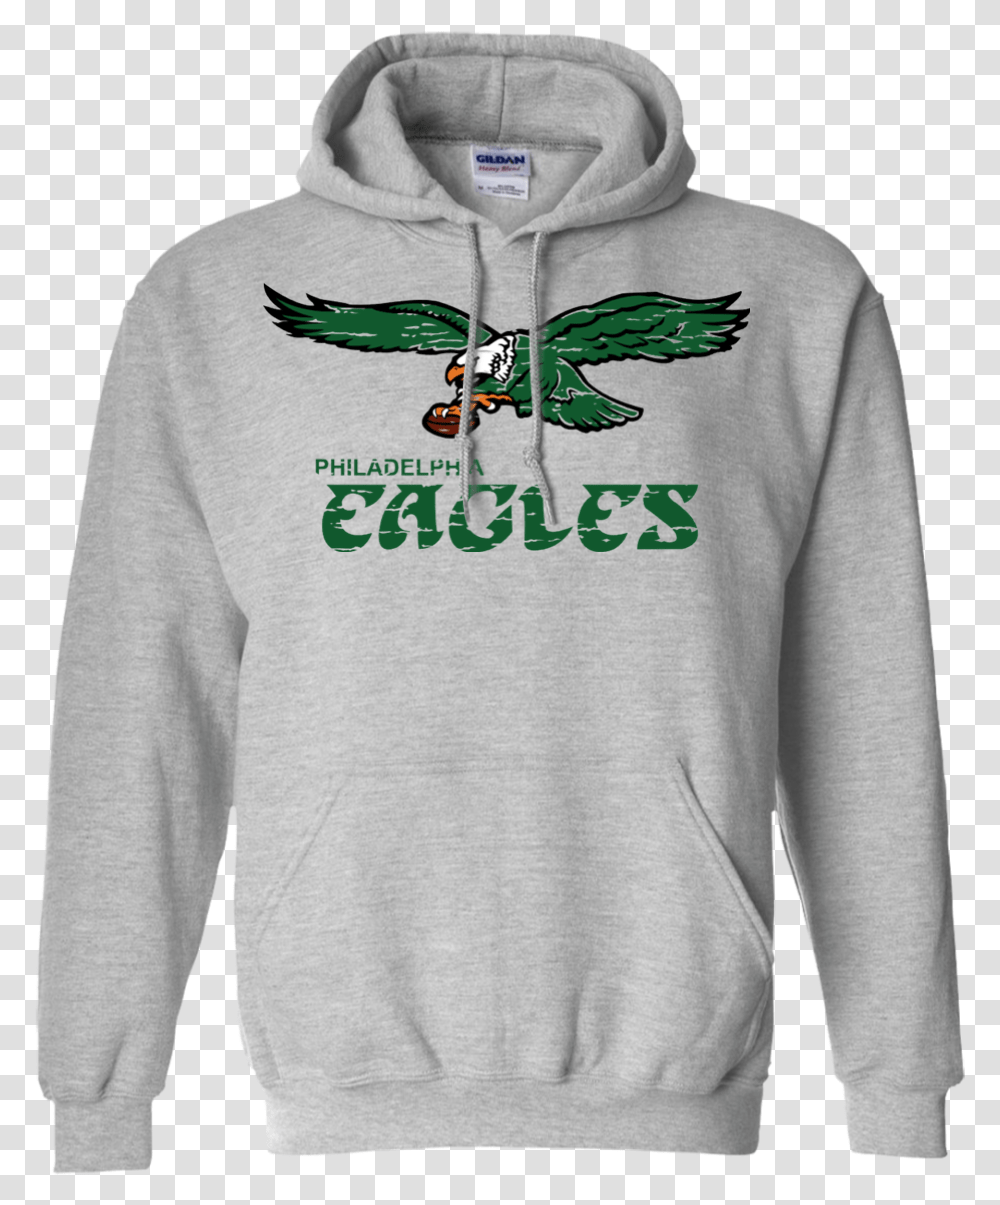 Retro Philadelphia Eagles Inspired Pullover Hoodie Utah Jazz Basketball Hoodie, Apparel, Sweatshirt, Sweater Transparent Png